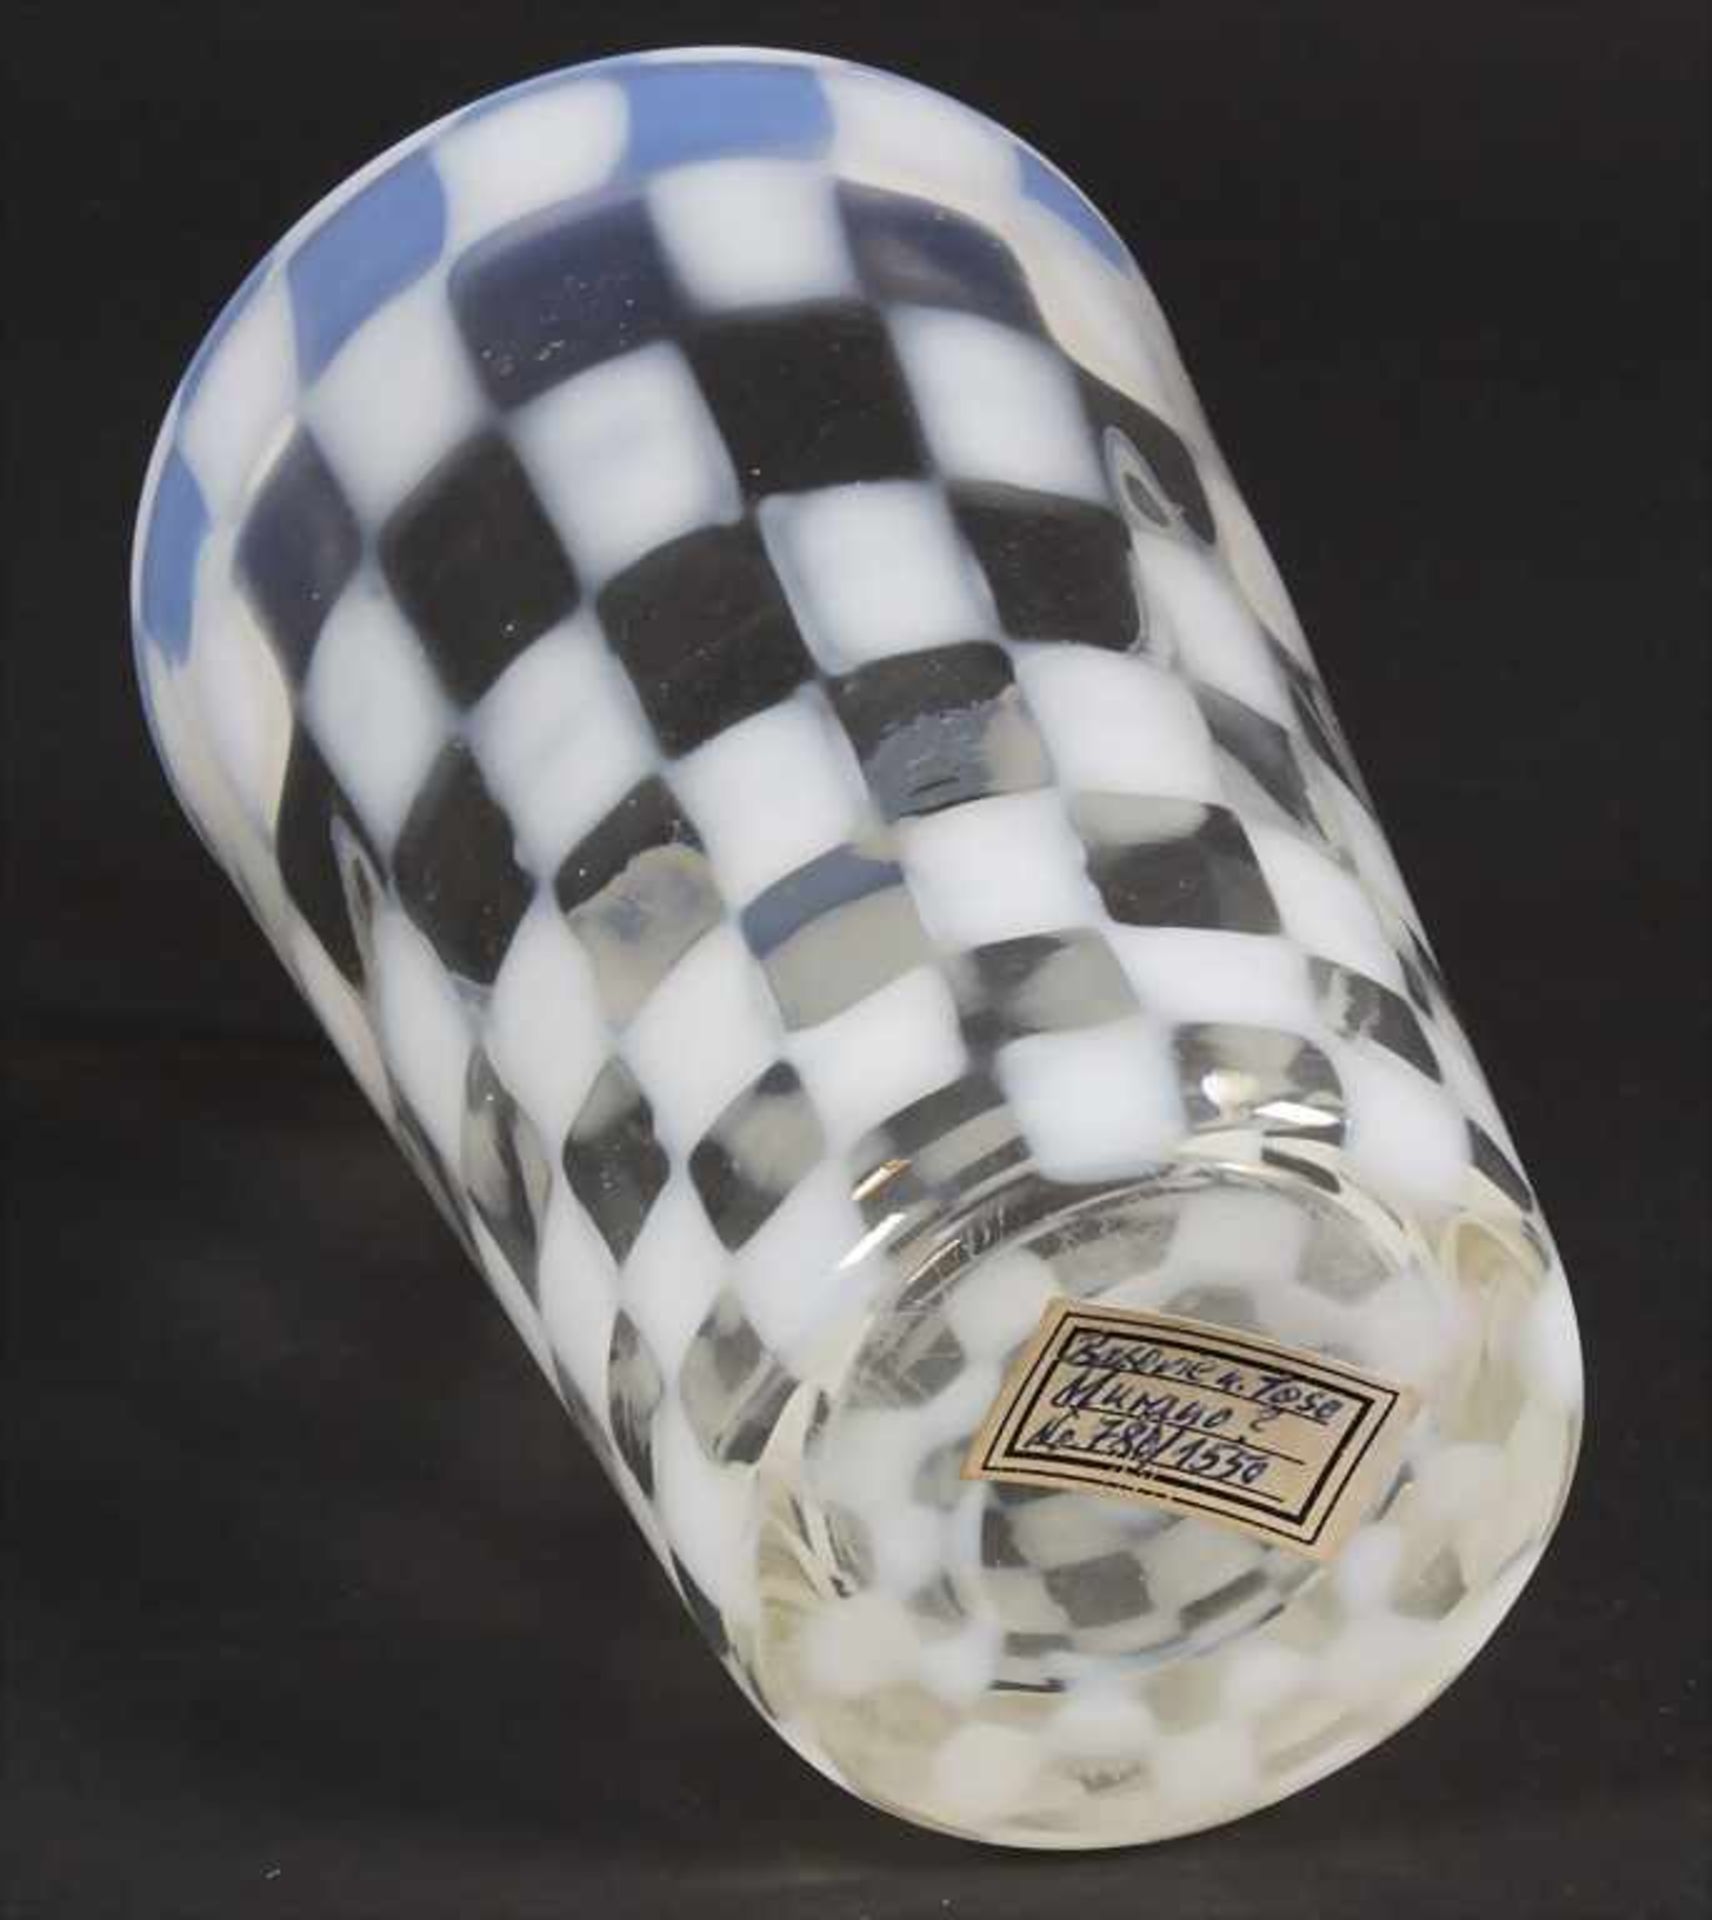 Glasziervase / A decorative glass vase, wohl Brovier & Toso, Murano - Bild 4 aus 4